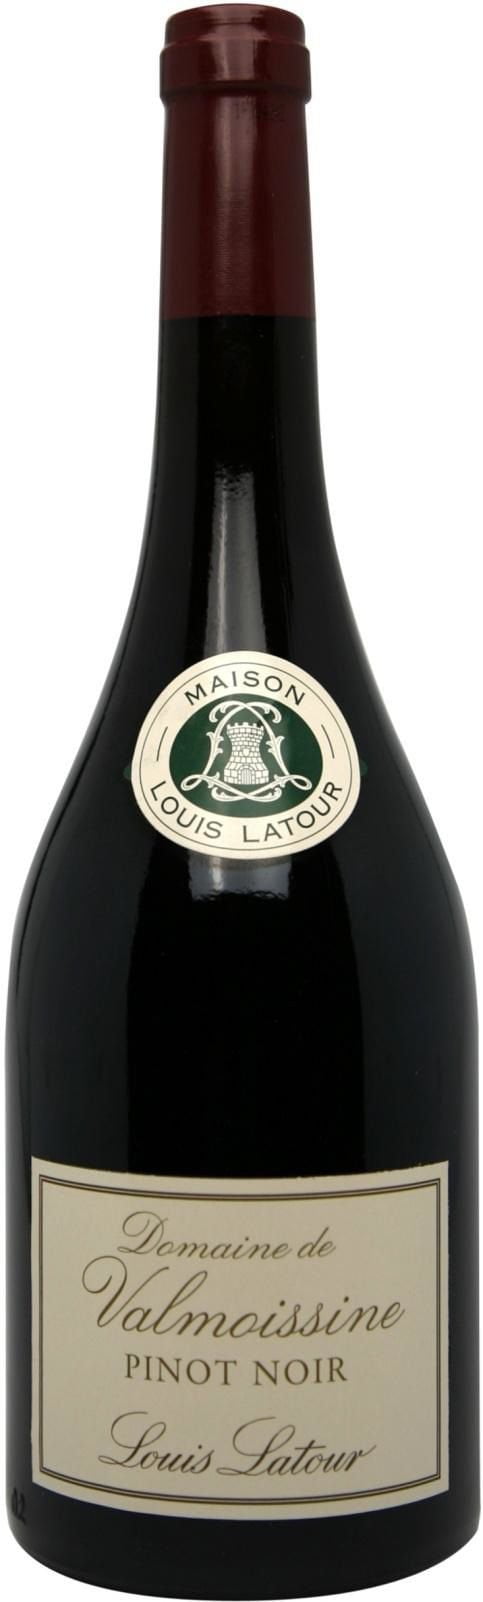 Domaine de Valmoissine Pinot Noir